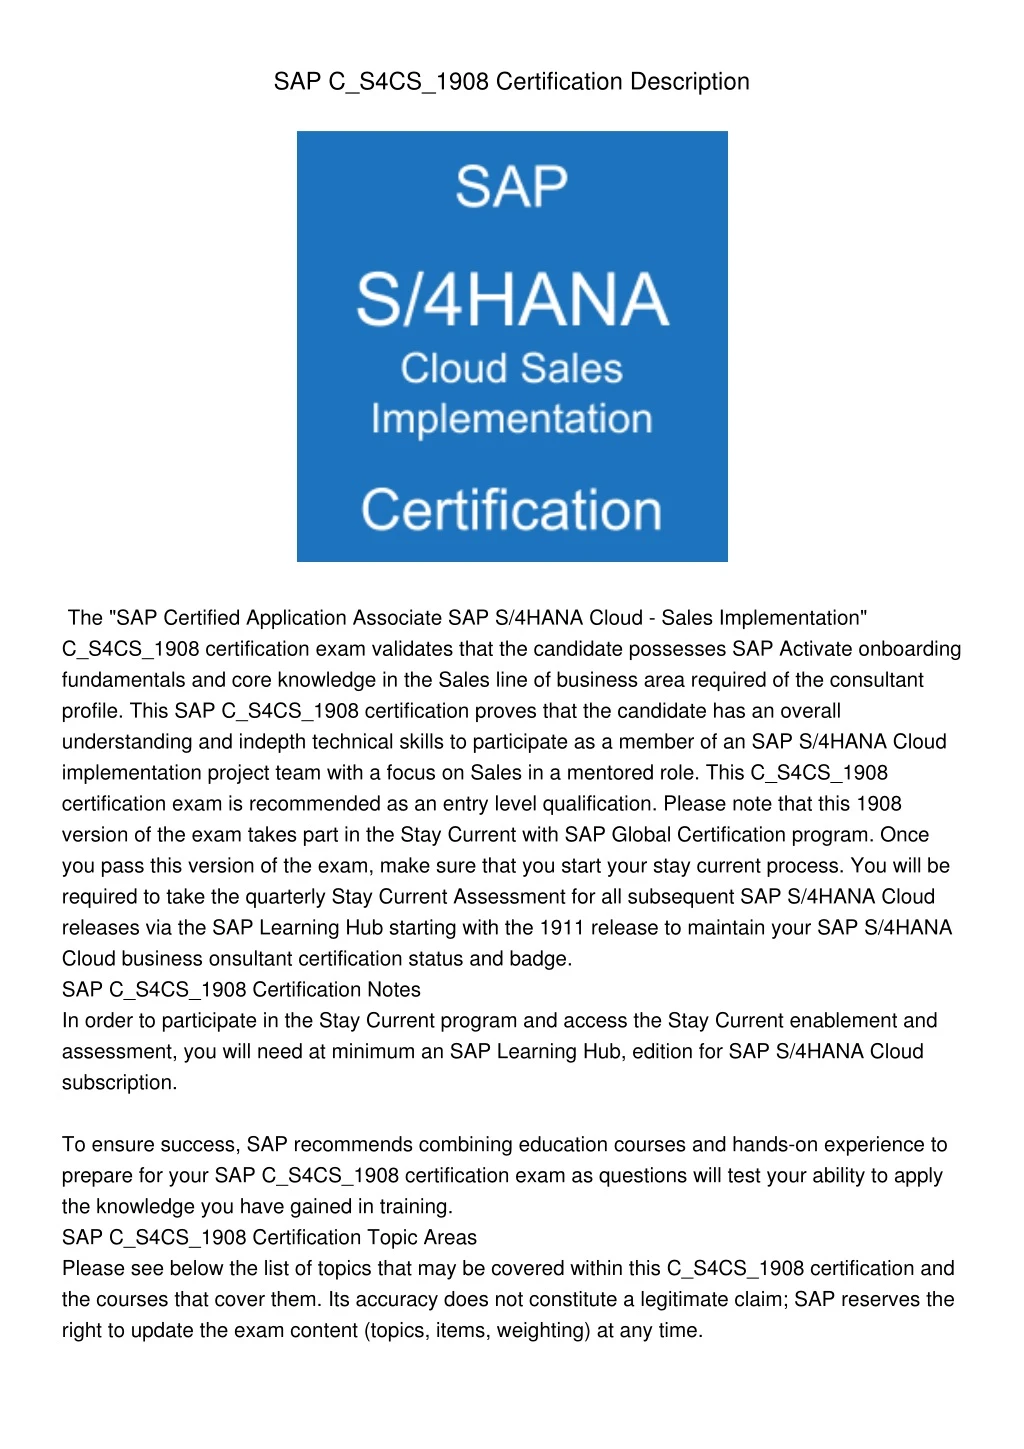 sap c s4cs 1908 certification description